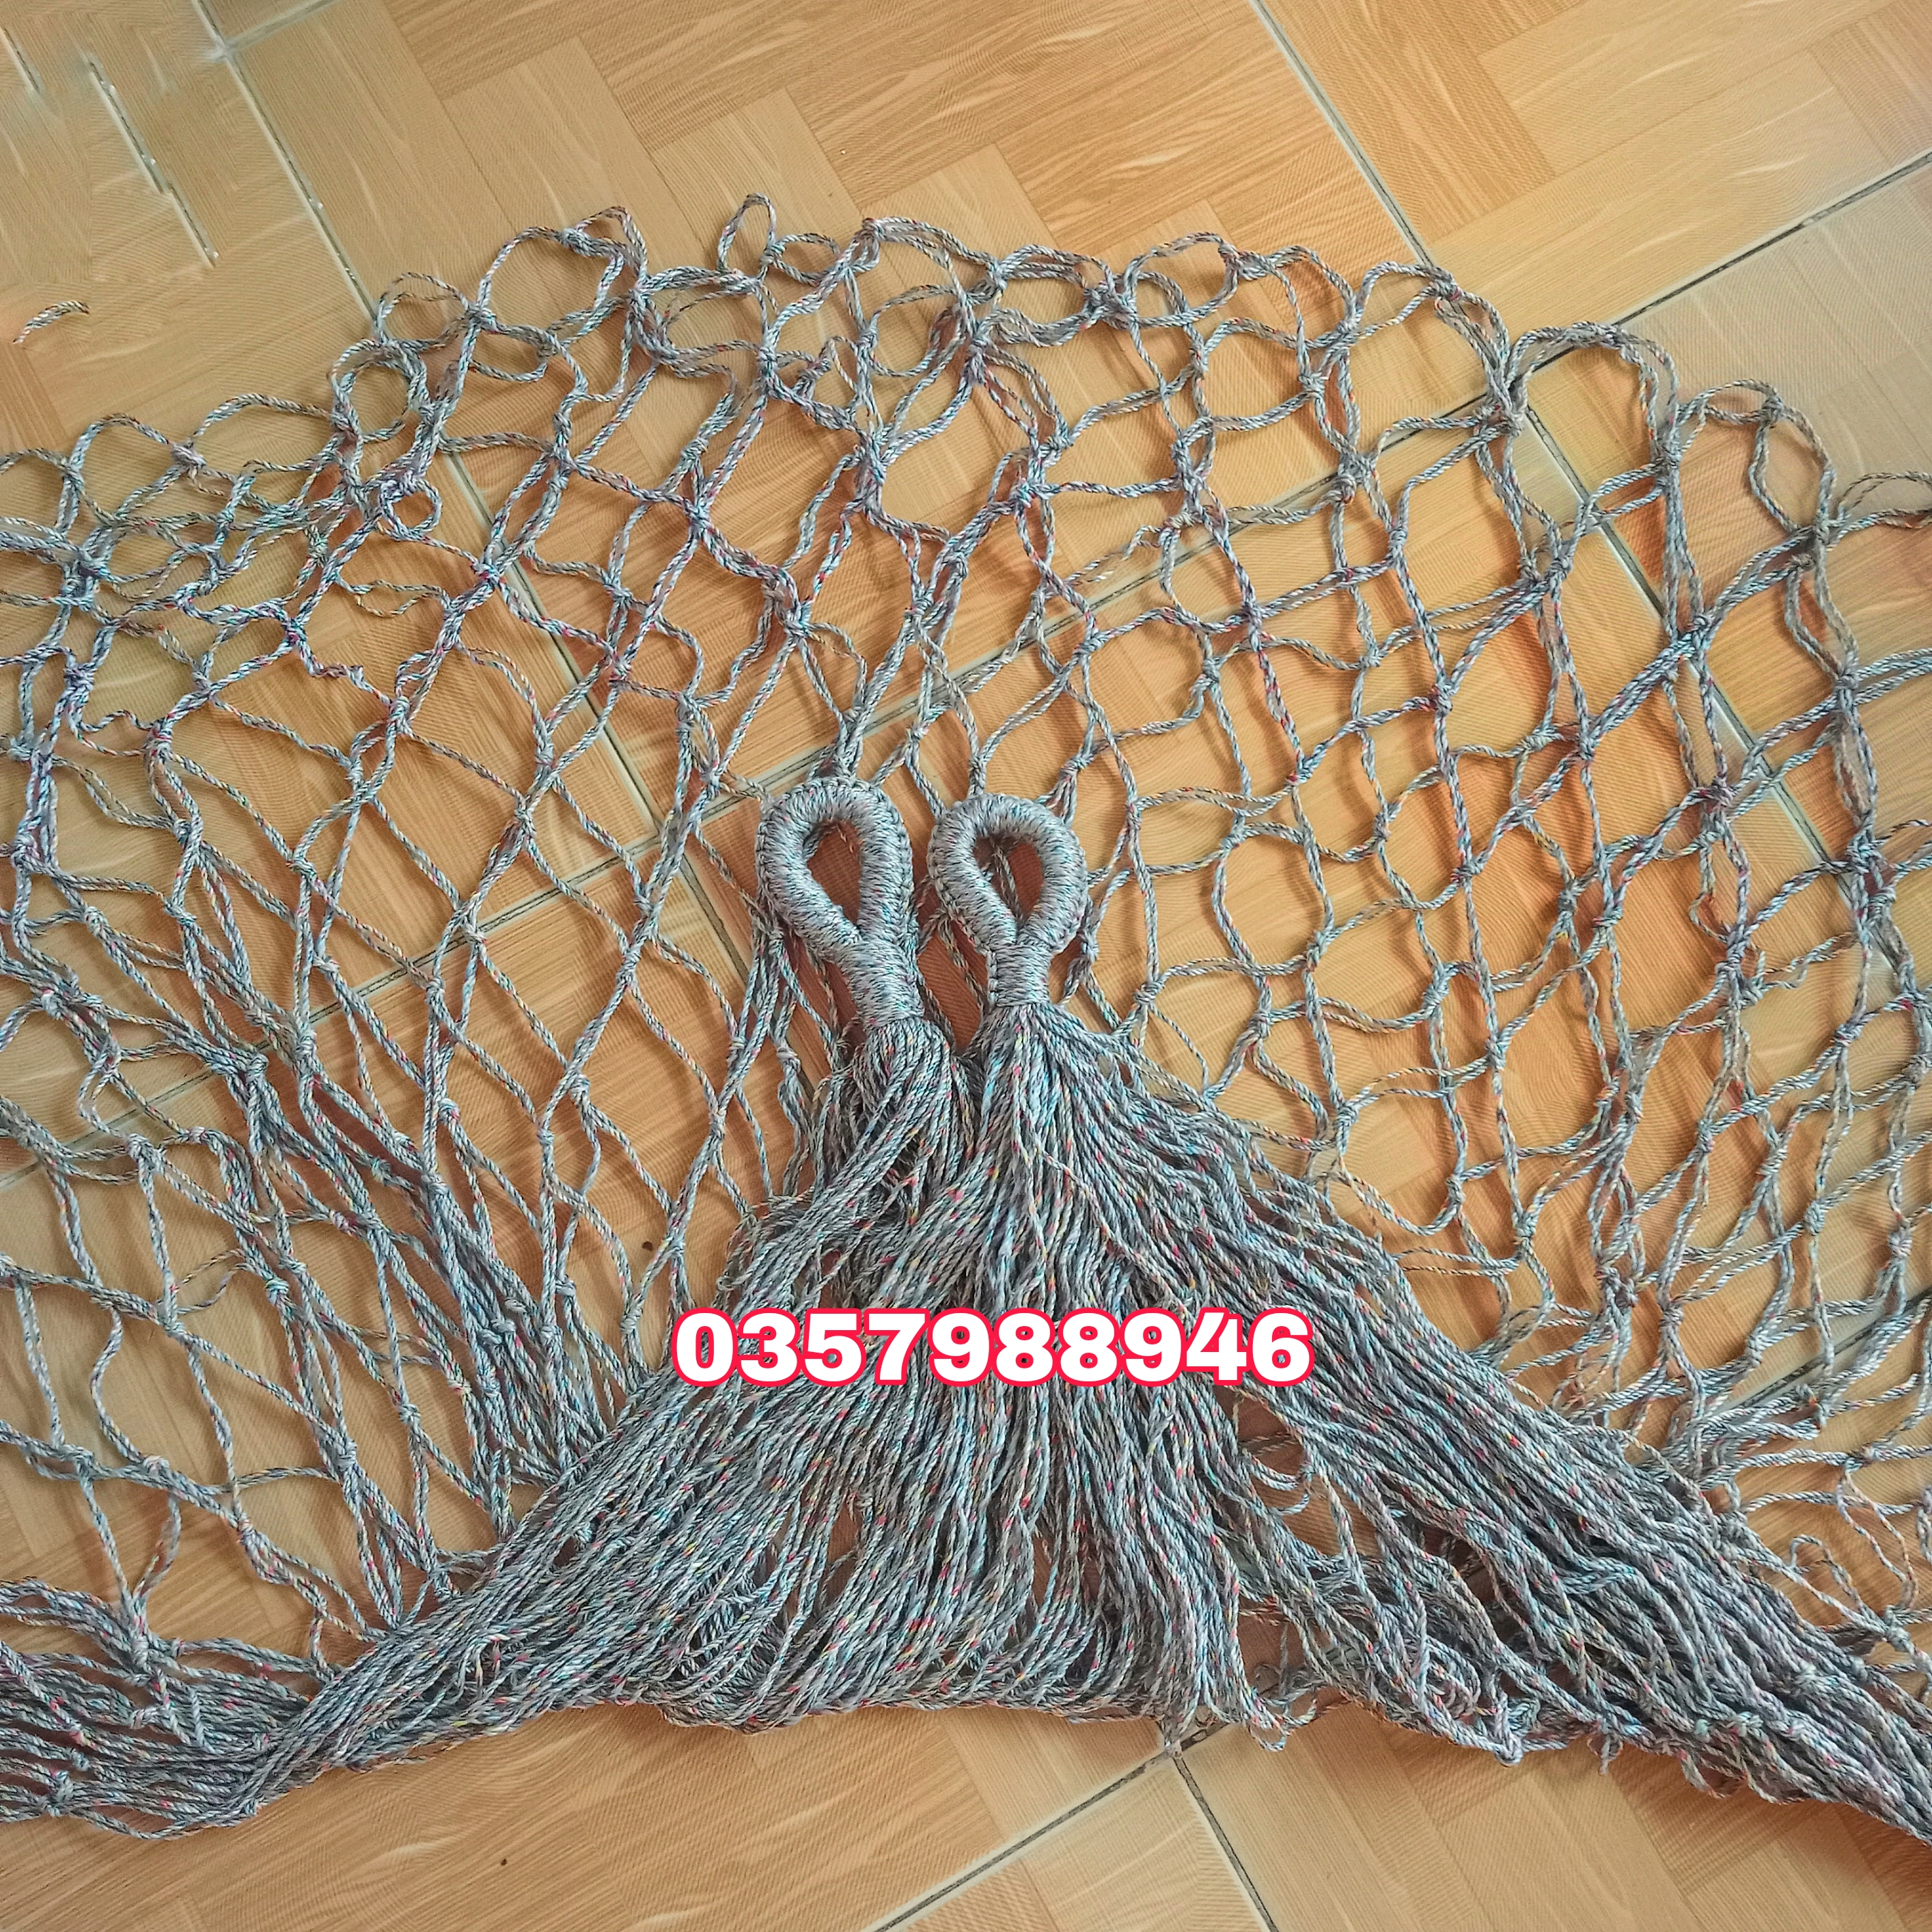 Võng lưới đan tay thủ công dây dù bó đầu chắc chắn, võng lưới treo du lịch dã ngoại